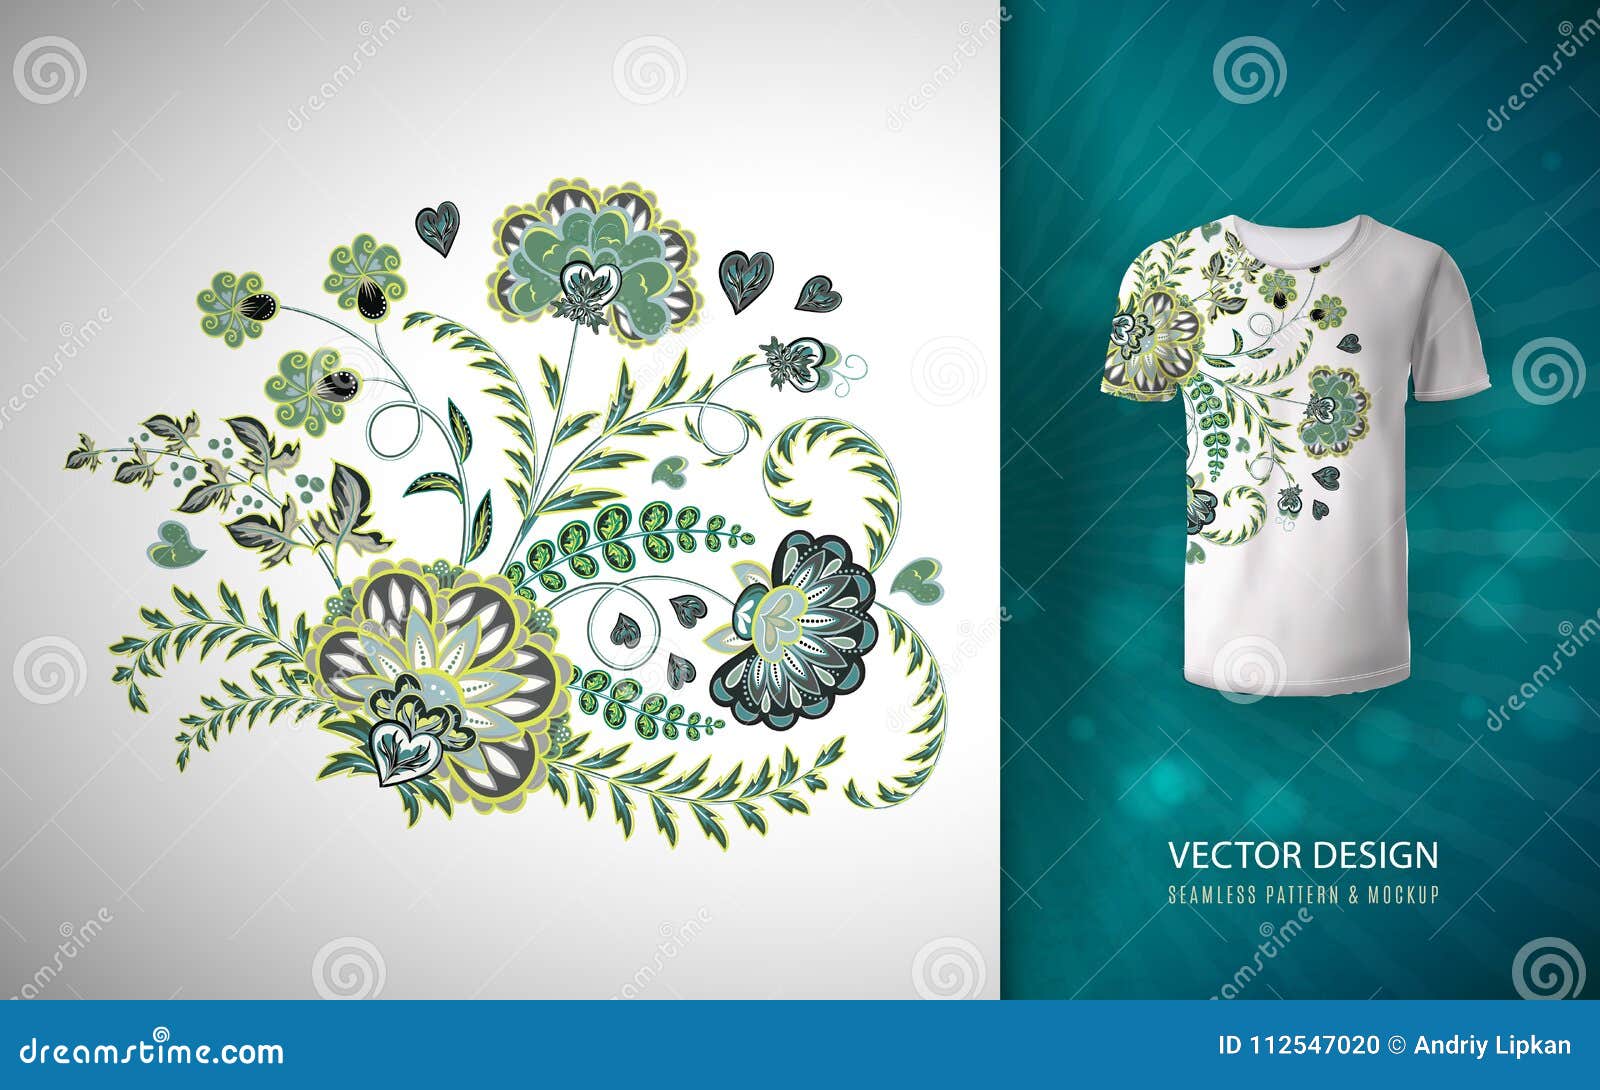 flower vector - Flower Illustration - T-Shirt